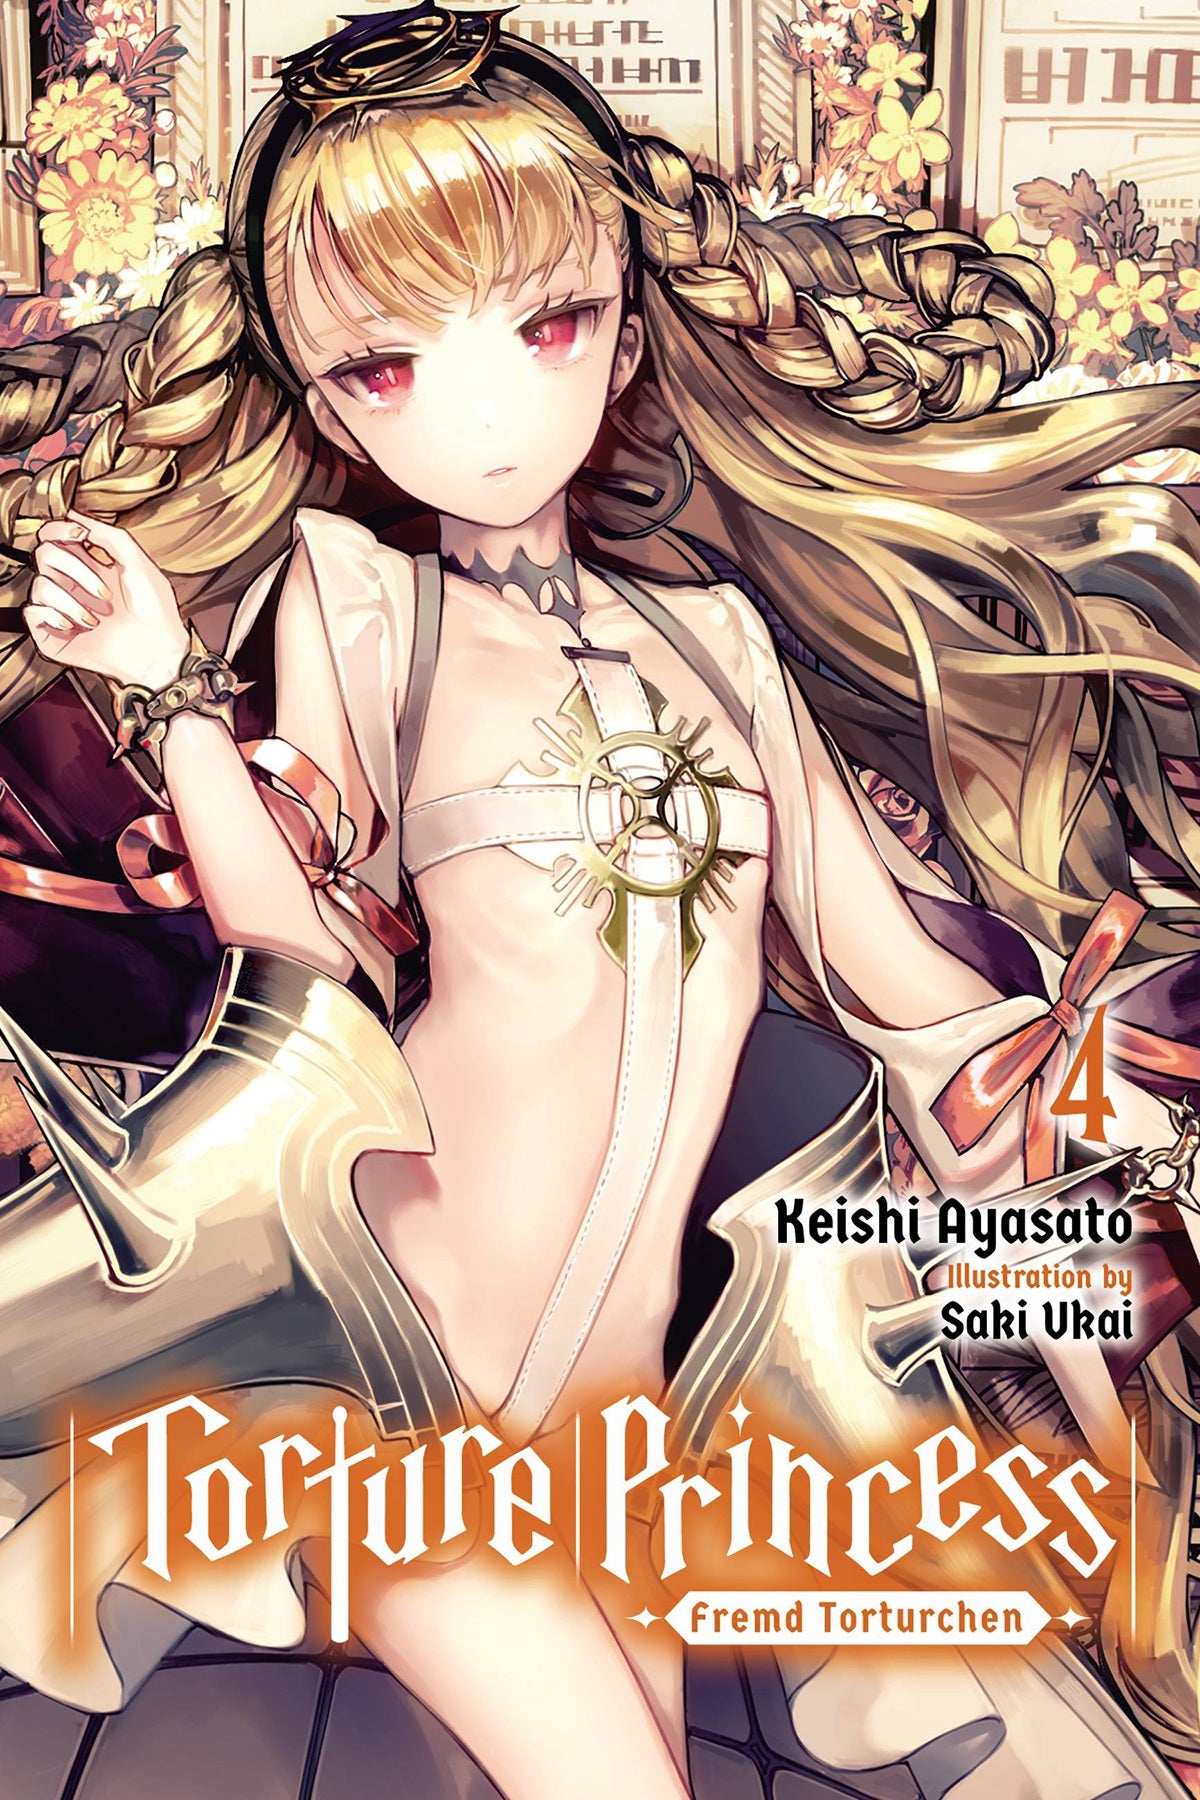 Torture Princess: Fremd Torturchen Vol. 04 (Light Novel)